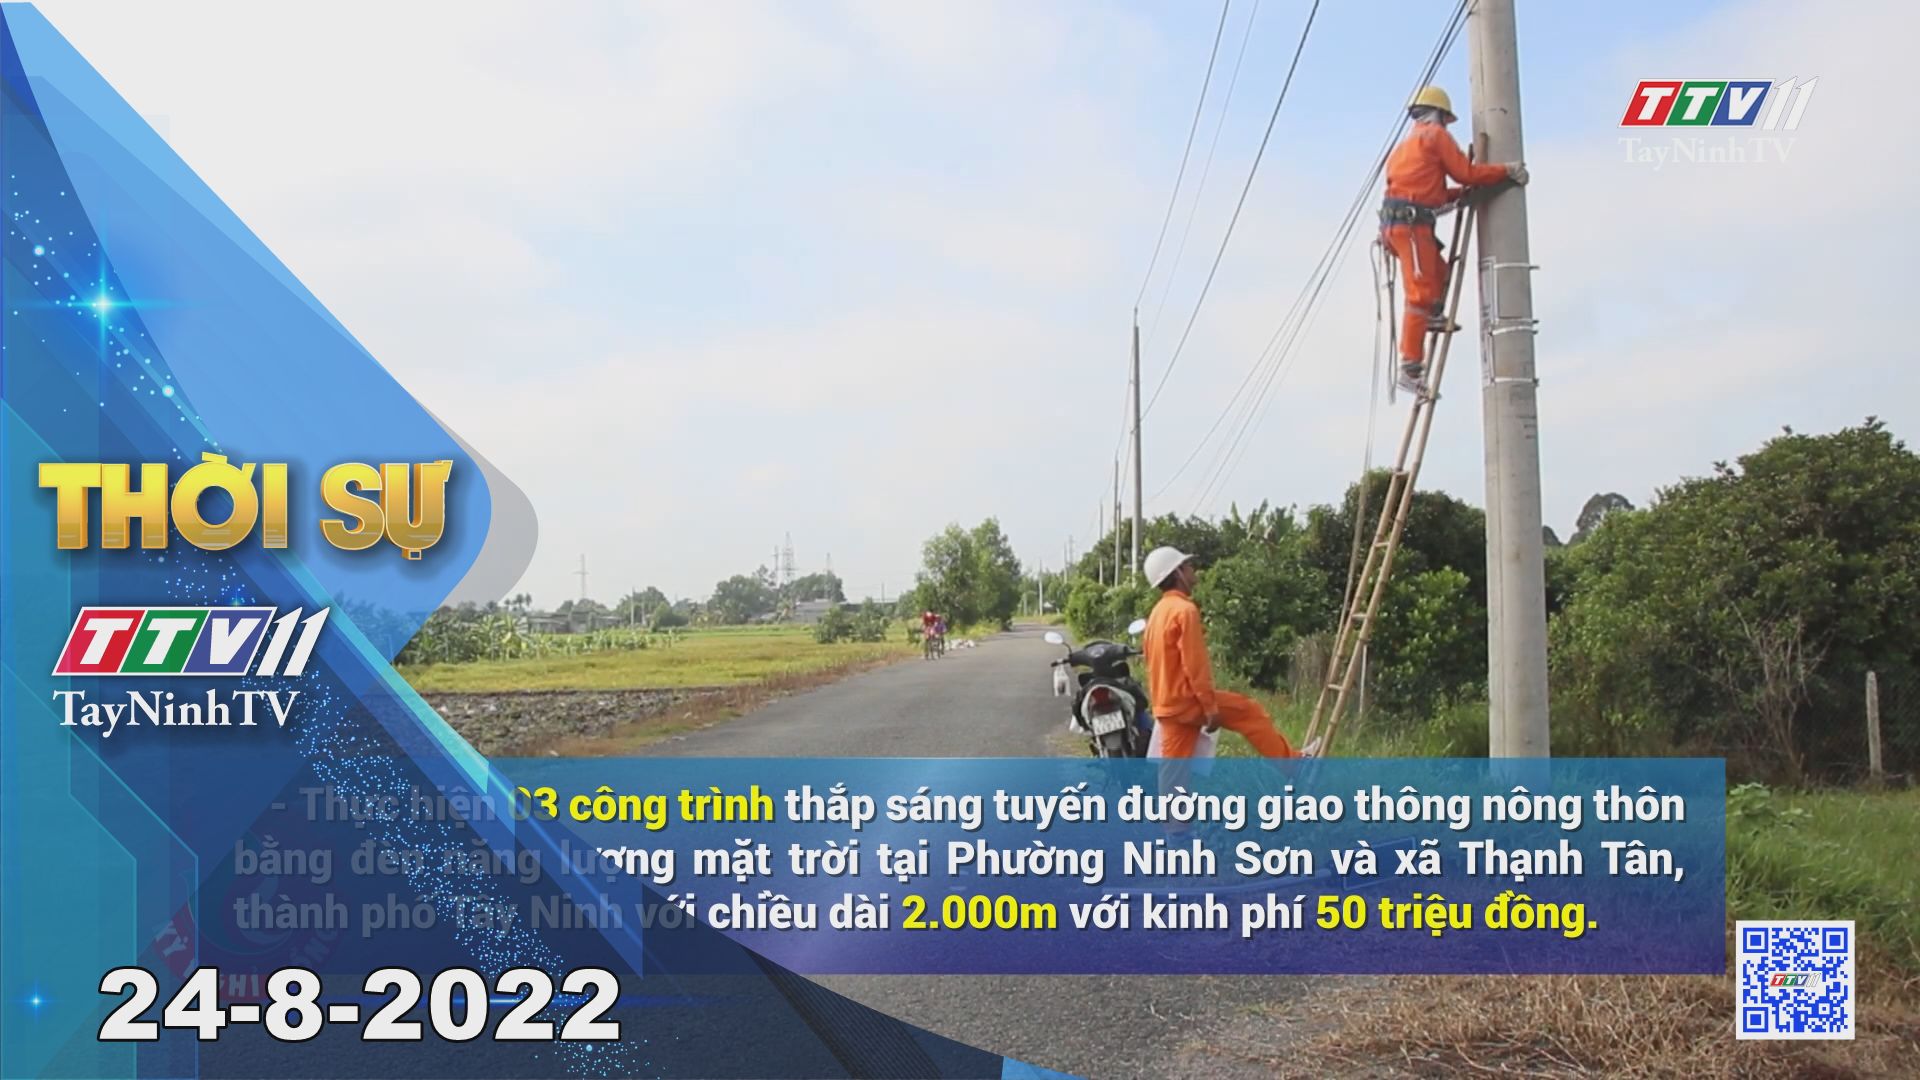 Thời sự Tây Ninh 27-8-2022 | Tin tức hôm nay | TayNinhTV